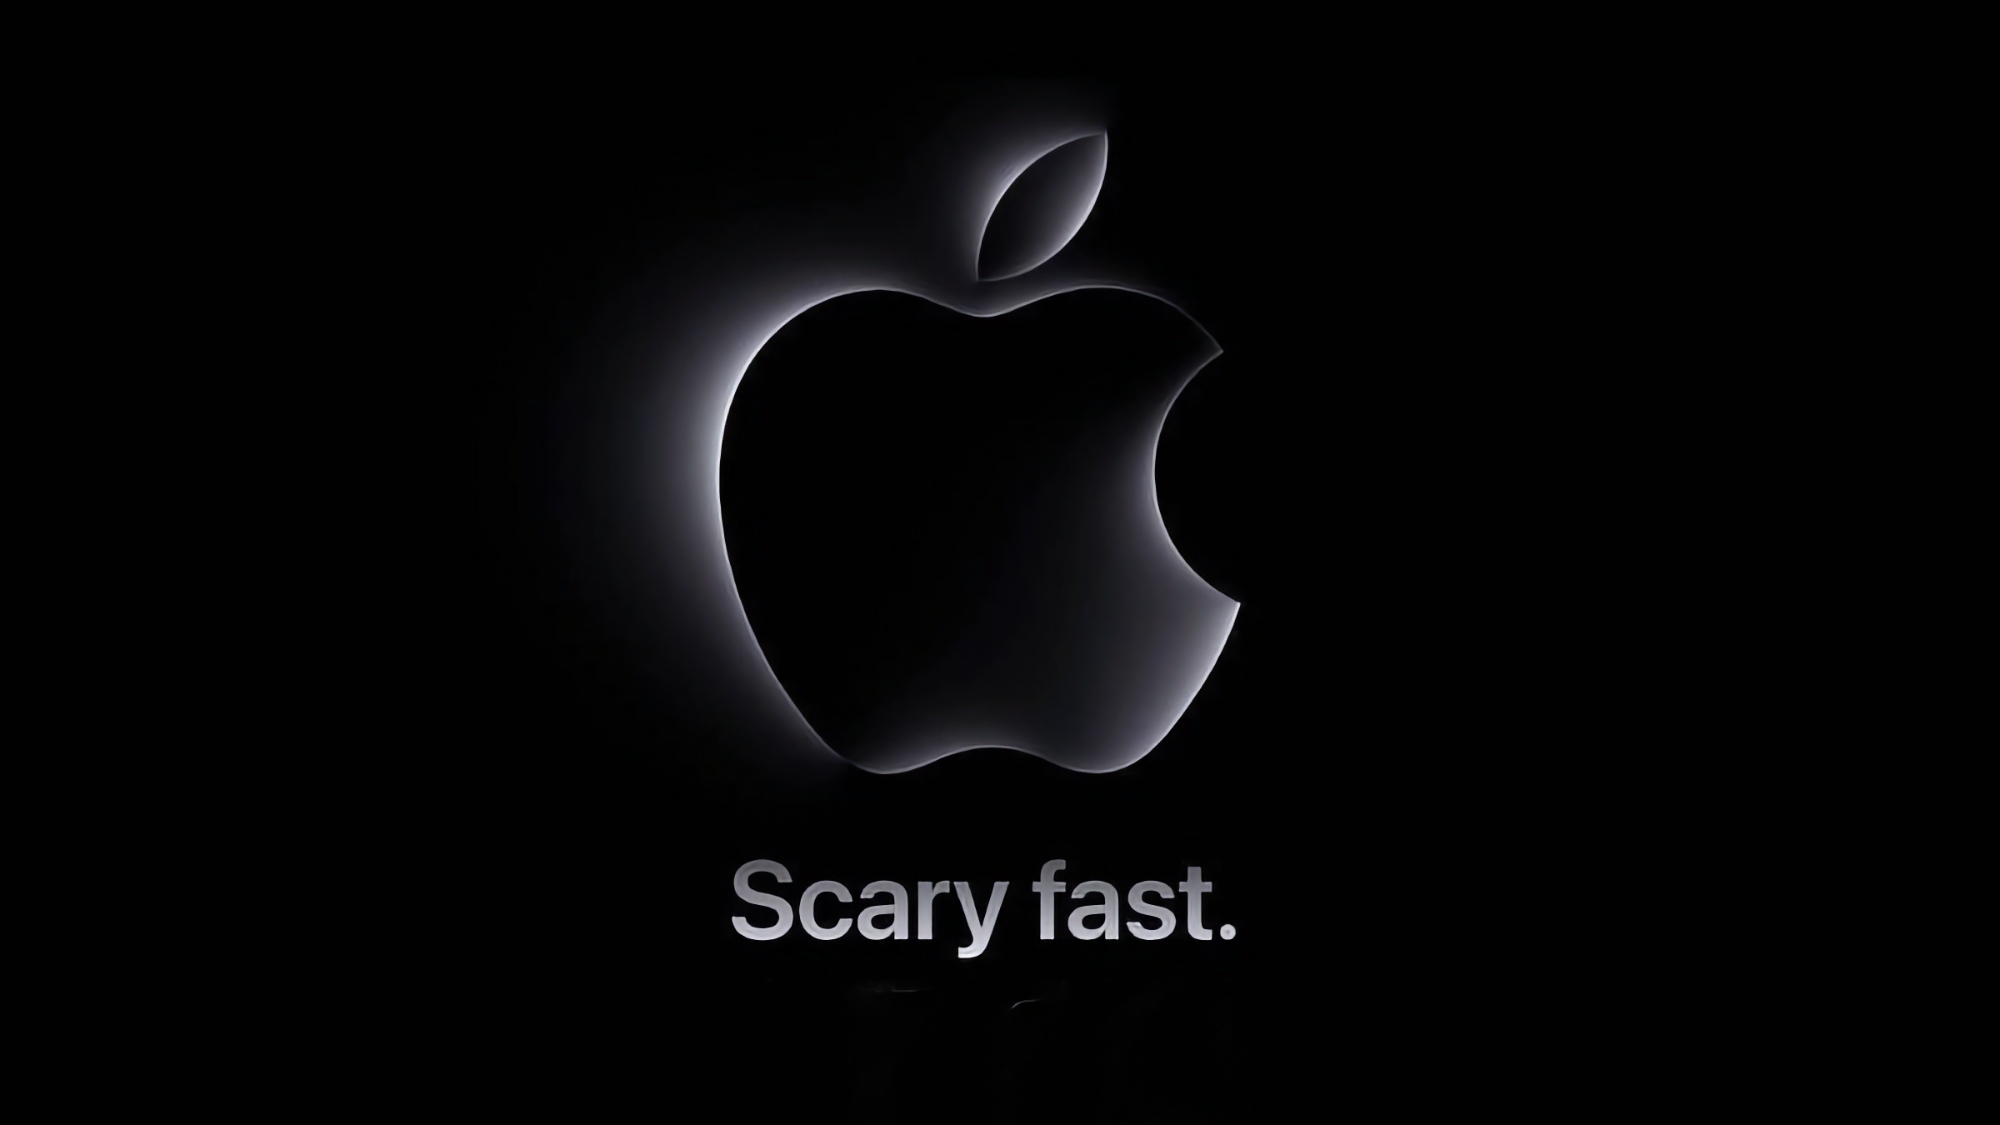 Waar en wanneer kun je de "Scary Fast" presentatie van Apple bekijken?